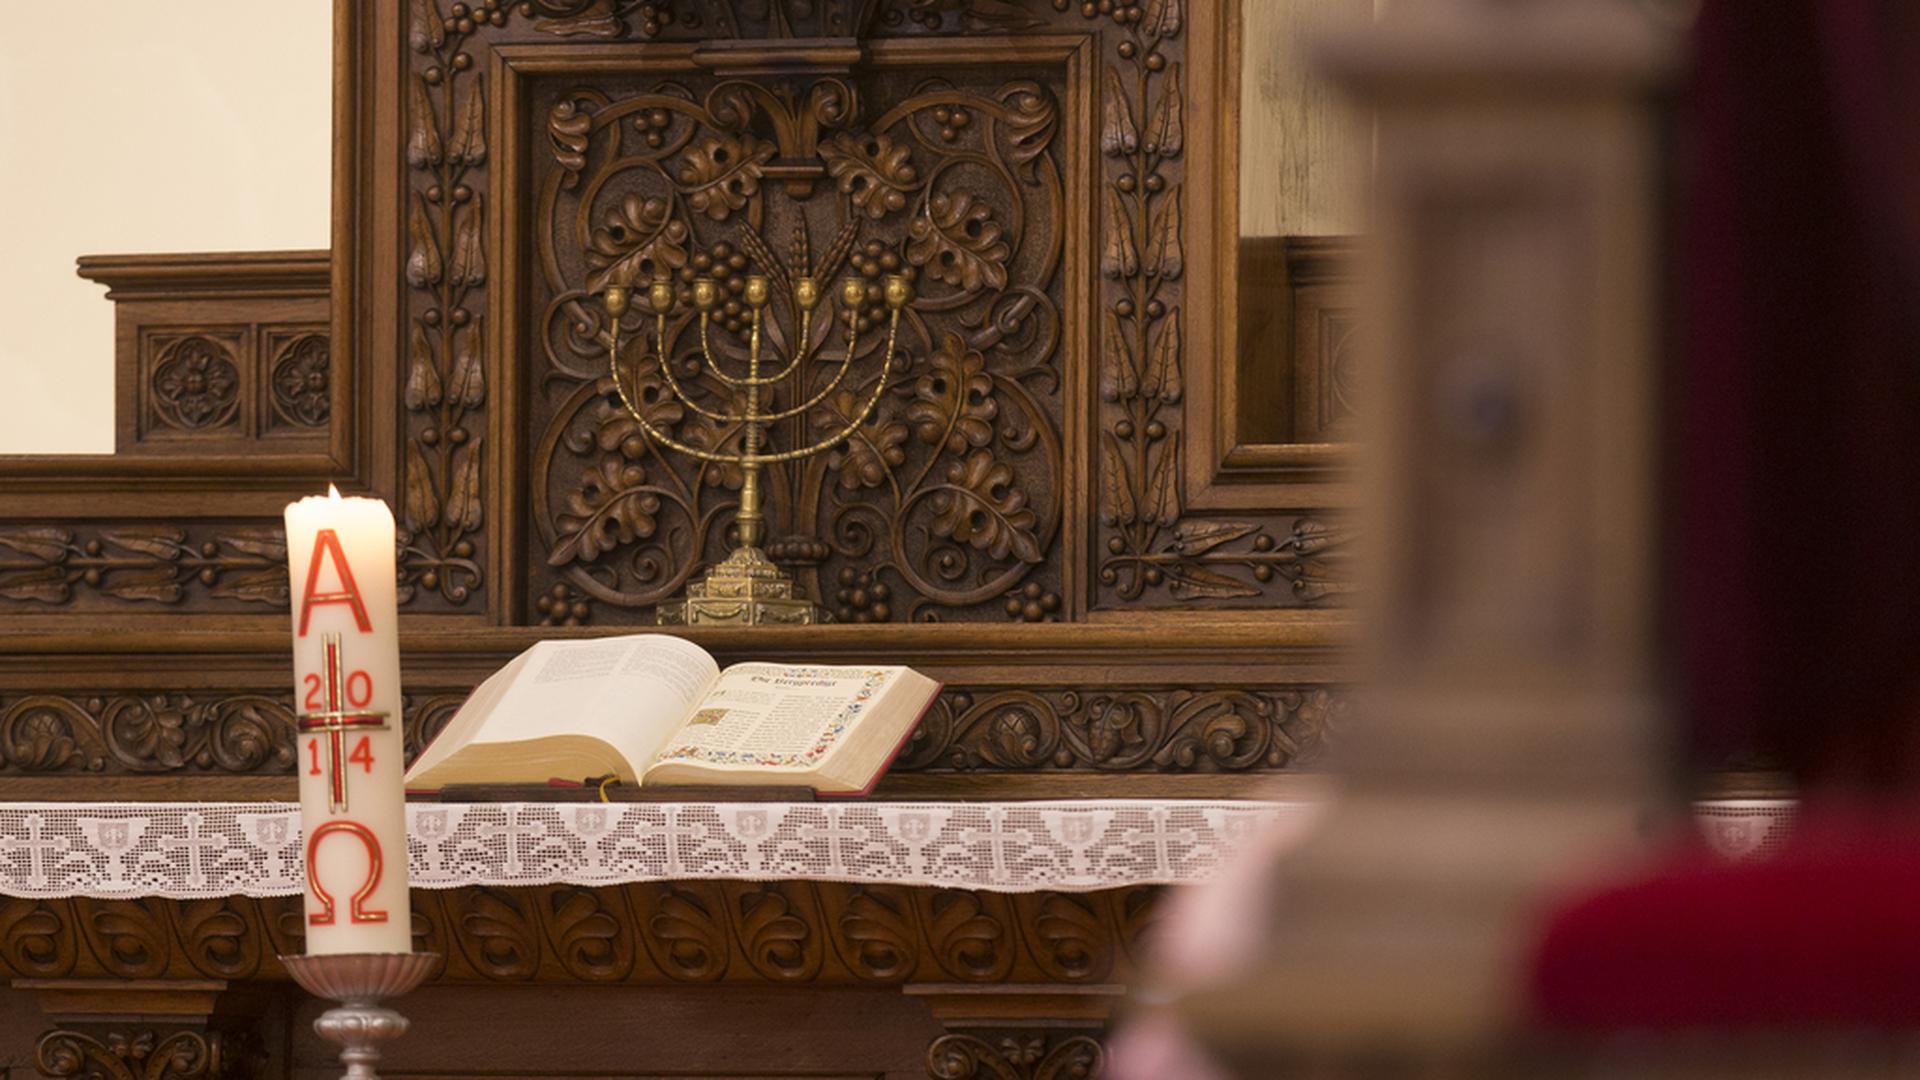 La Bible (Ancien et Nouveau testament), seule autorité reconnue par les protestants, sous un chandelier à 7 branches symbolisant le judaïsme et l'enracinement dans la foi de Jésus